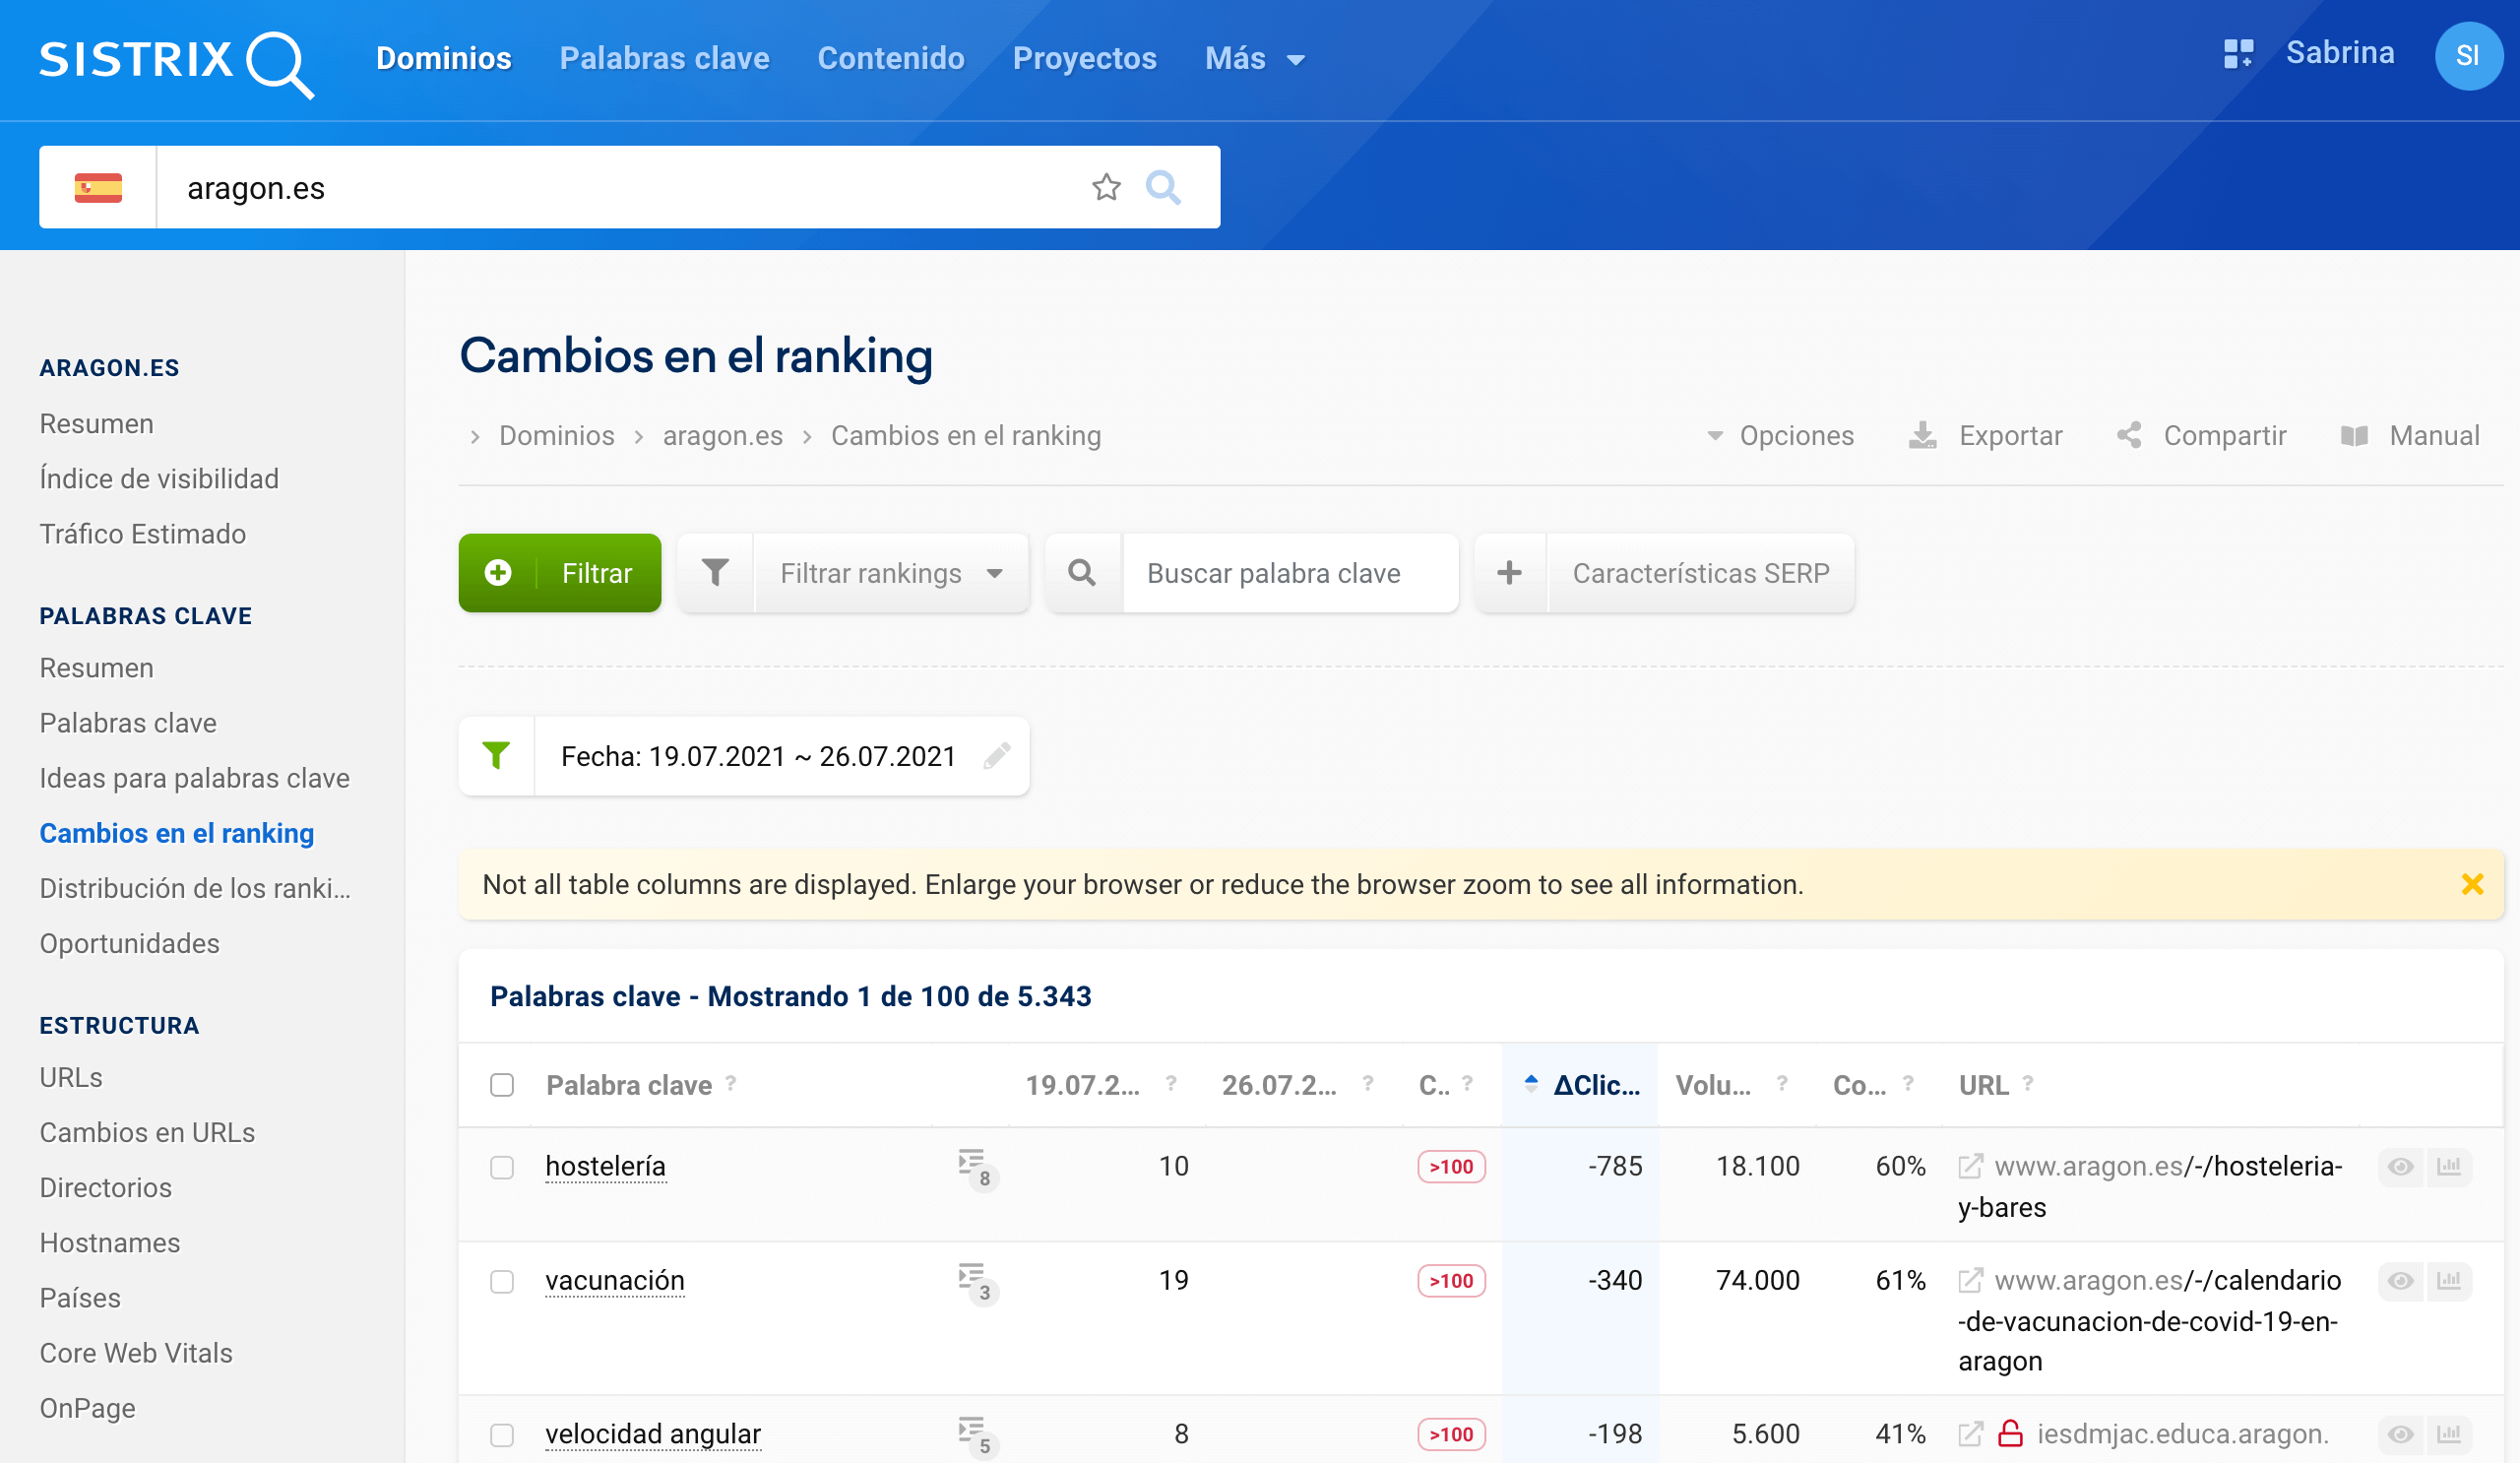 aragon.es cambios en el ranking 